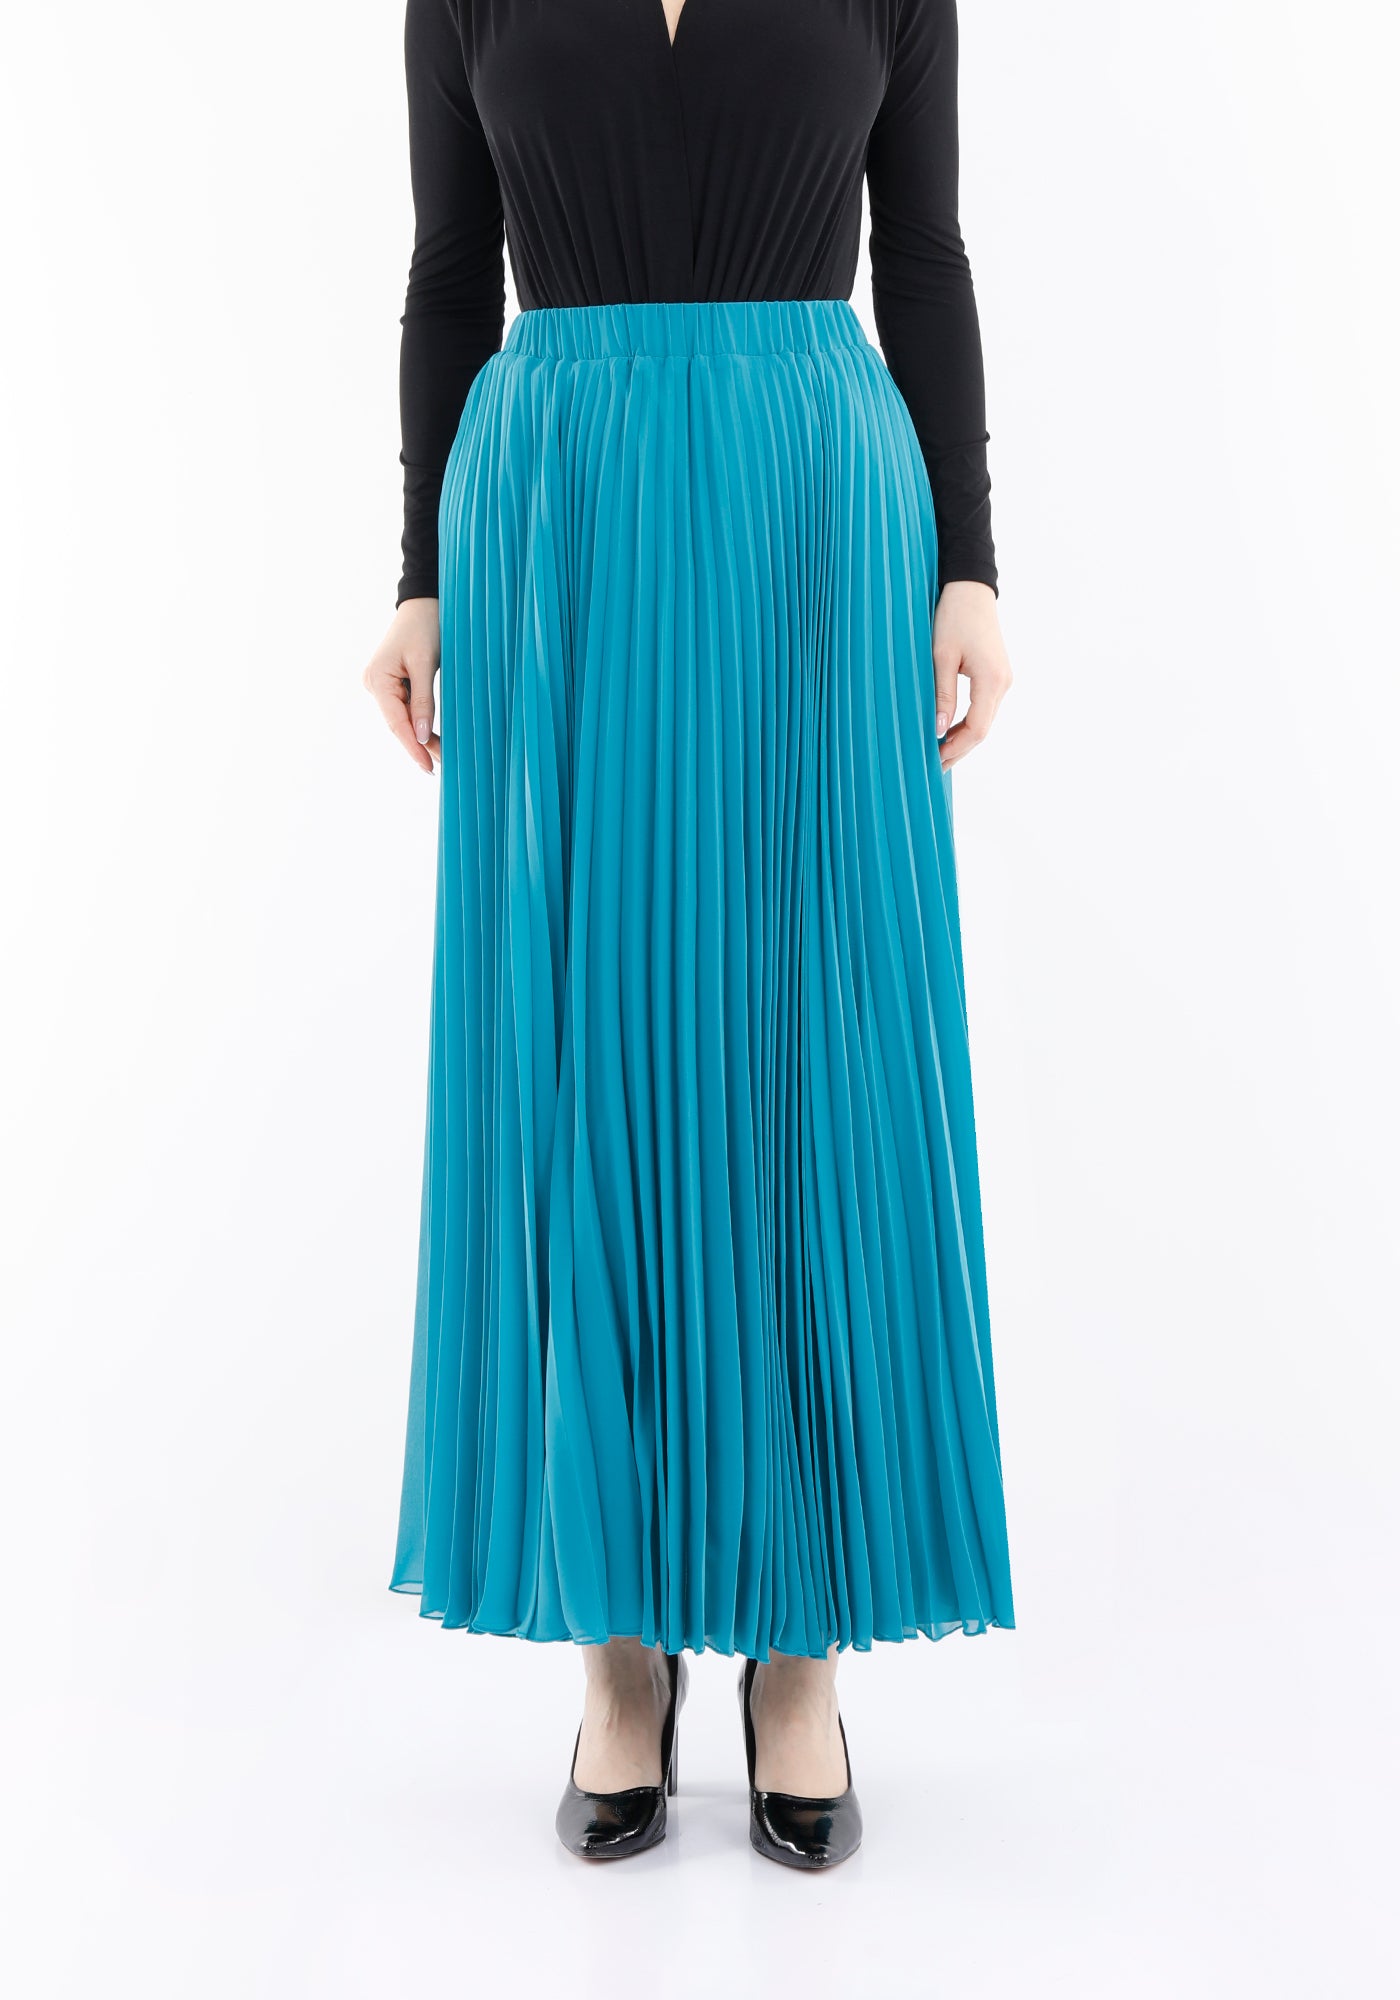 Turquoise Chiffon Pleated Maxi Skirt with Elastic Waist Band Guzella